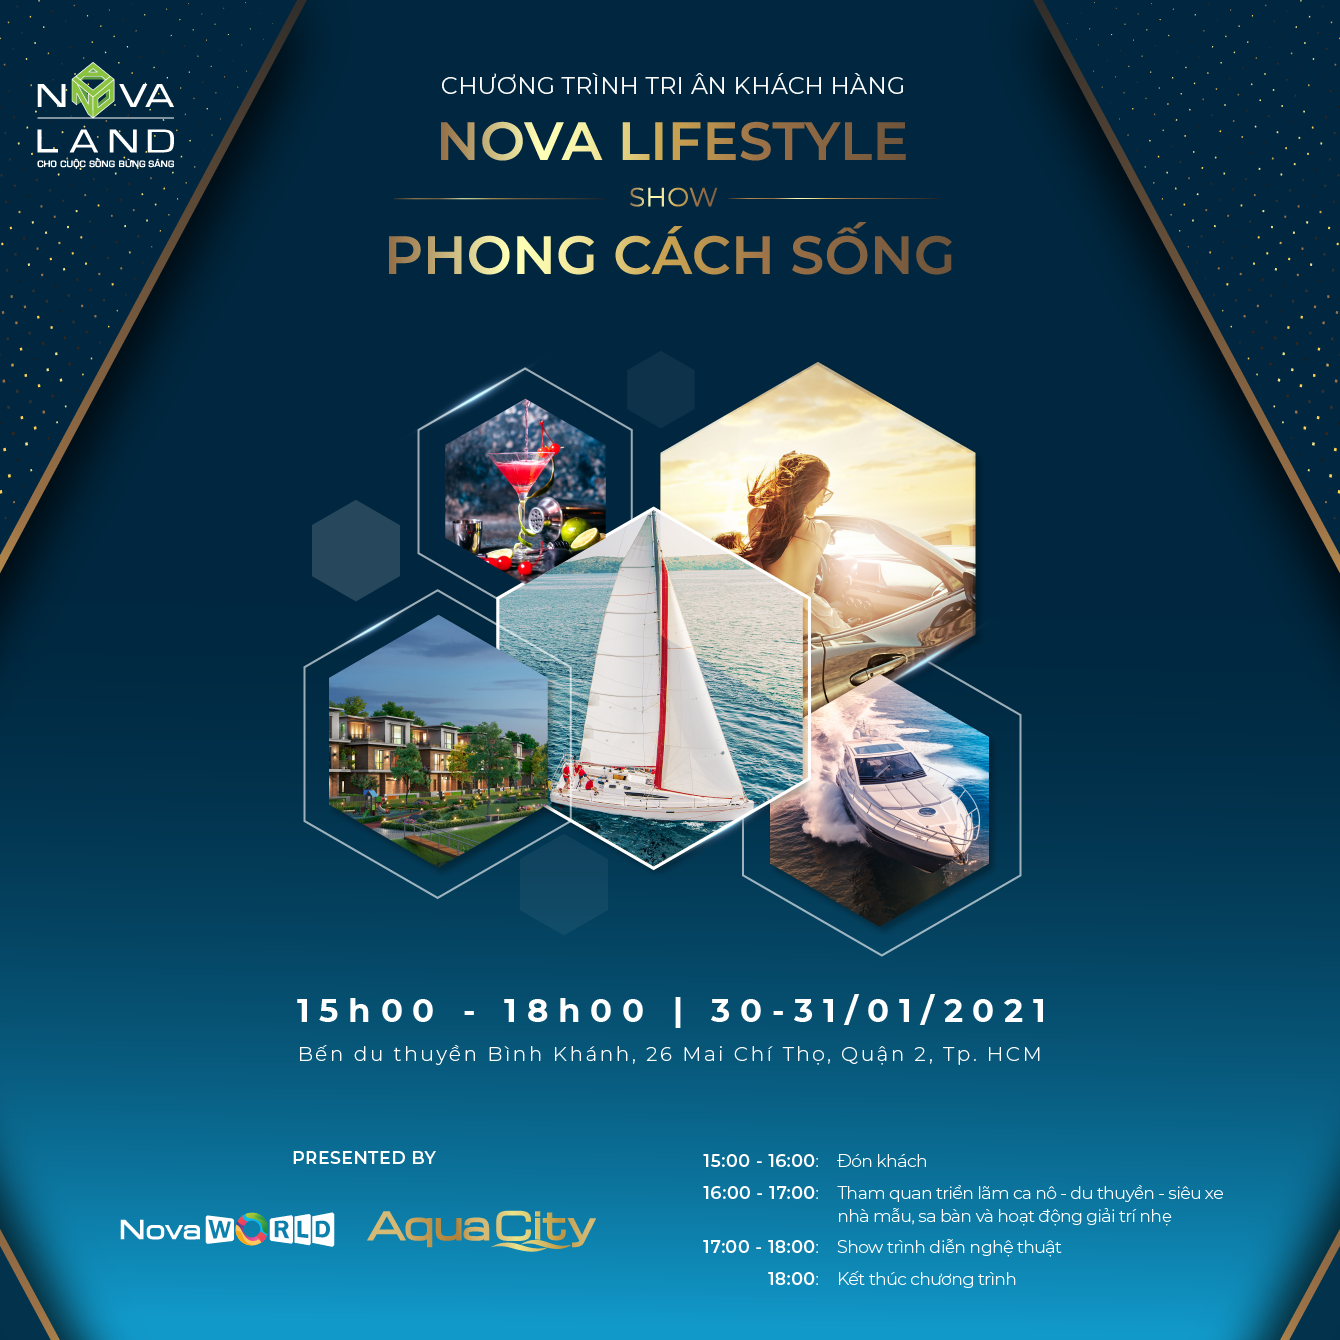 Novaland tổ chức sự kiện “Nova Lifestyle –Show Phong Cách Sống” tri ân khách hàng